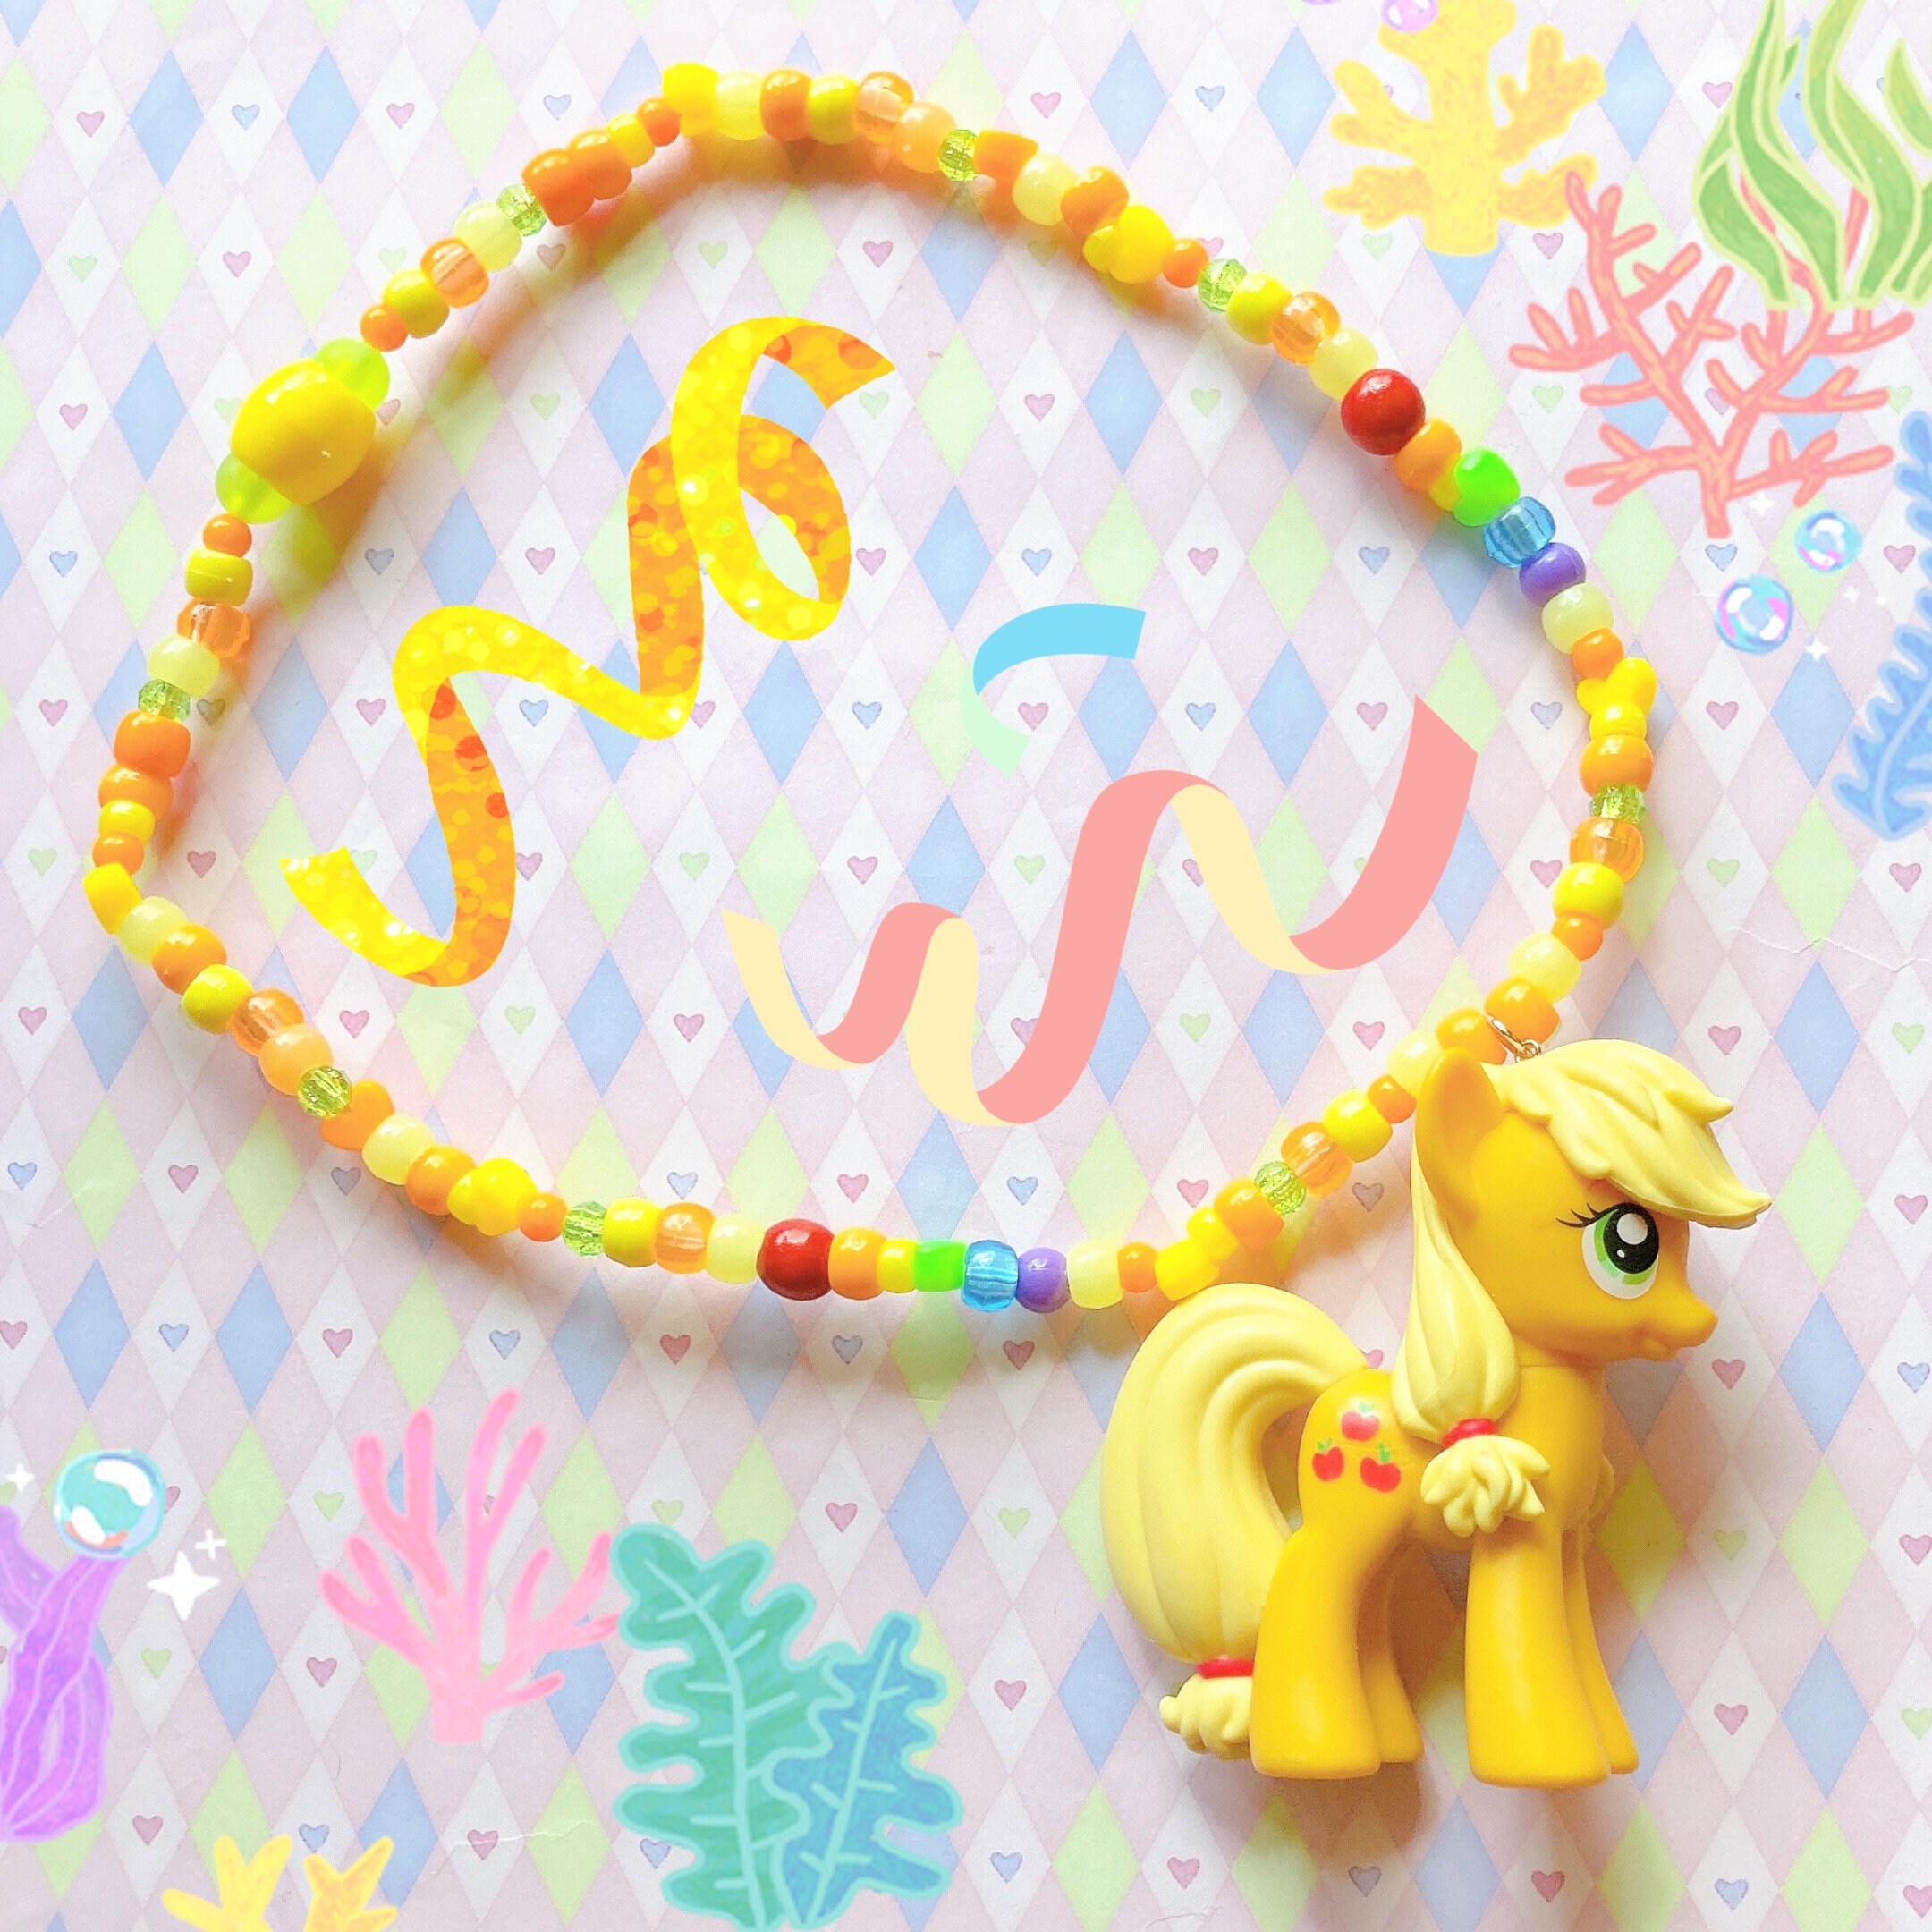 Little Pony Charms - kandi beads - 10 pcs